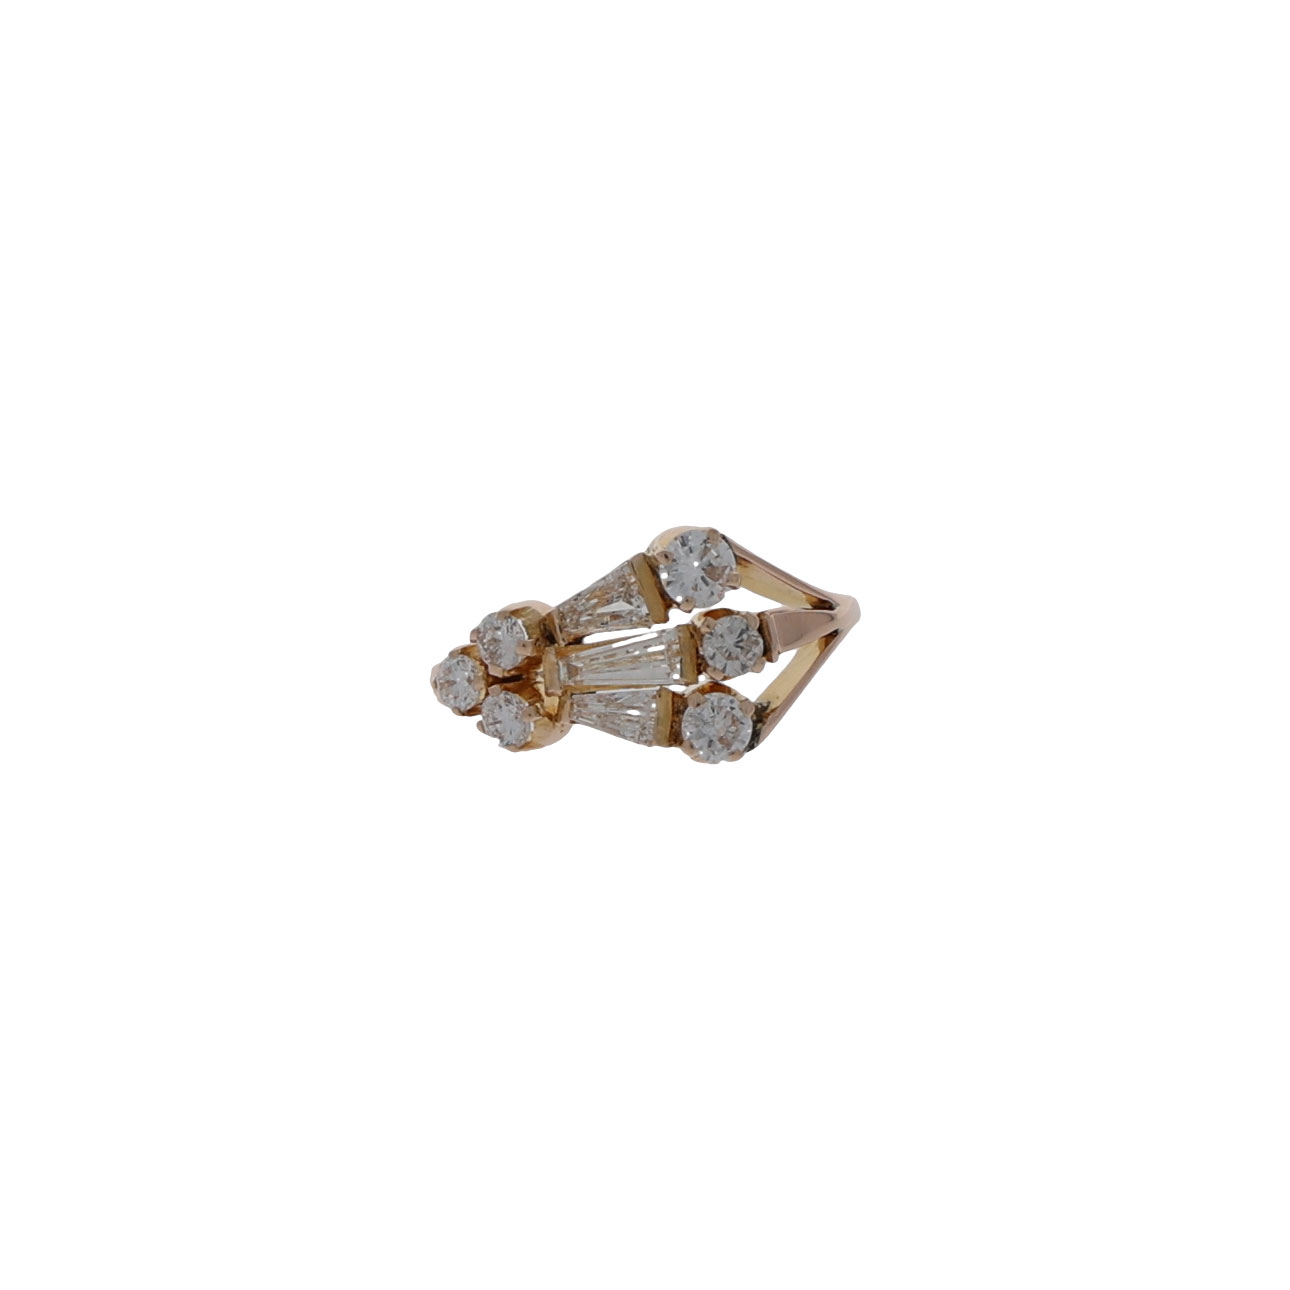 Ring Gr.53,5 Gelbgold 750 / 18K mit 1,15 ct Diamanten